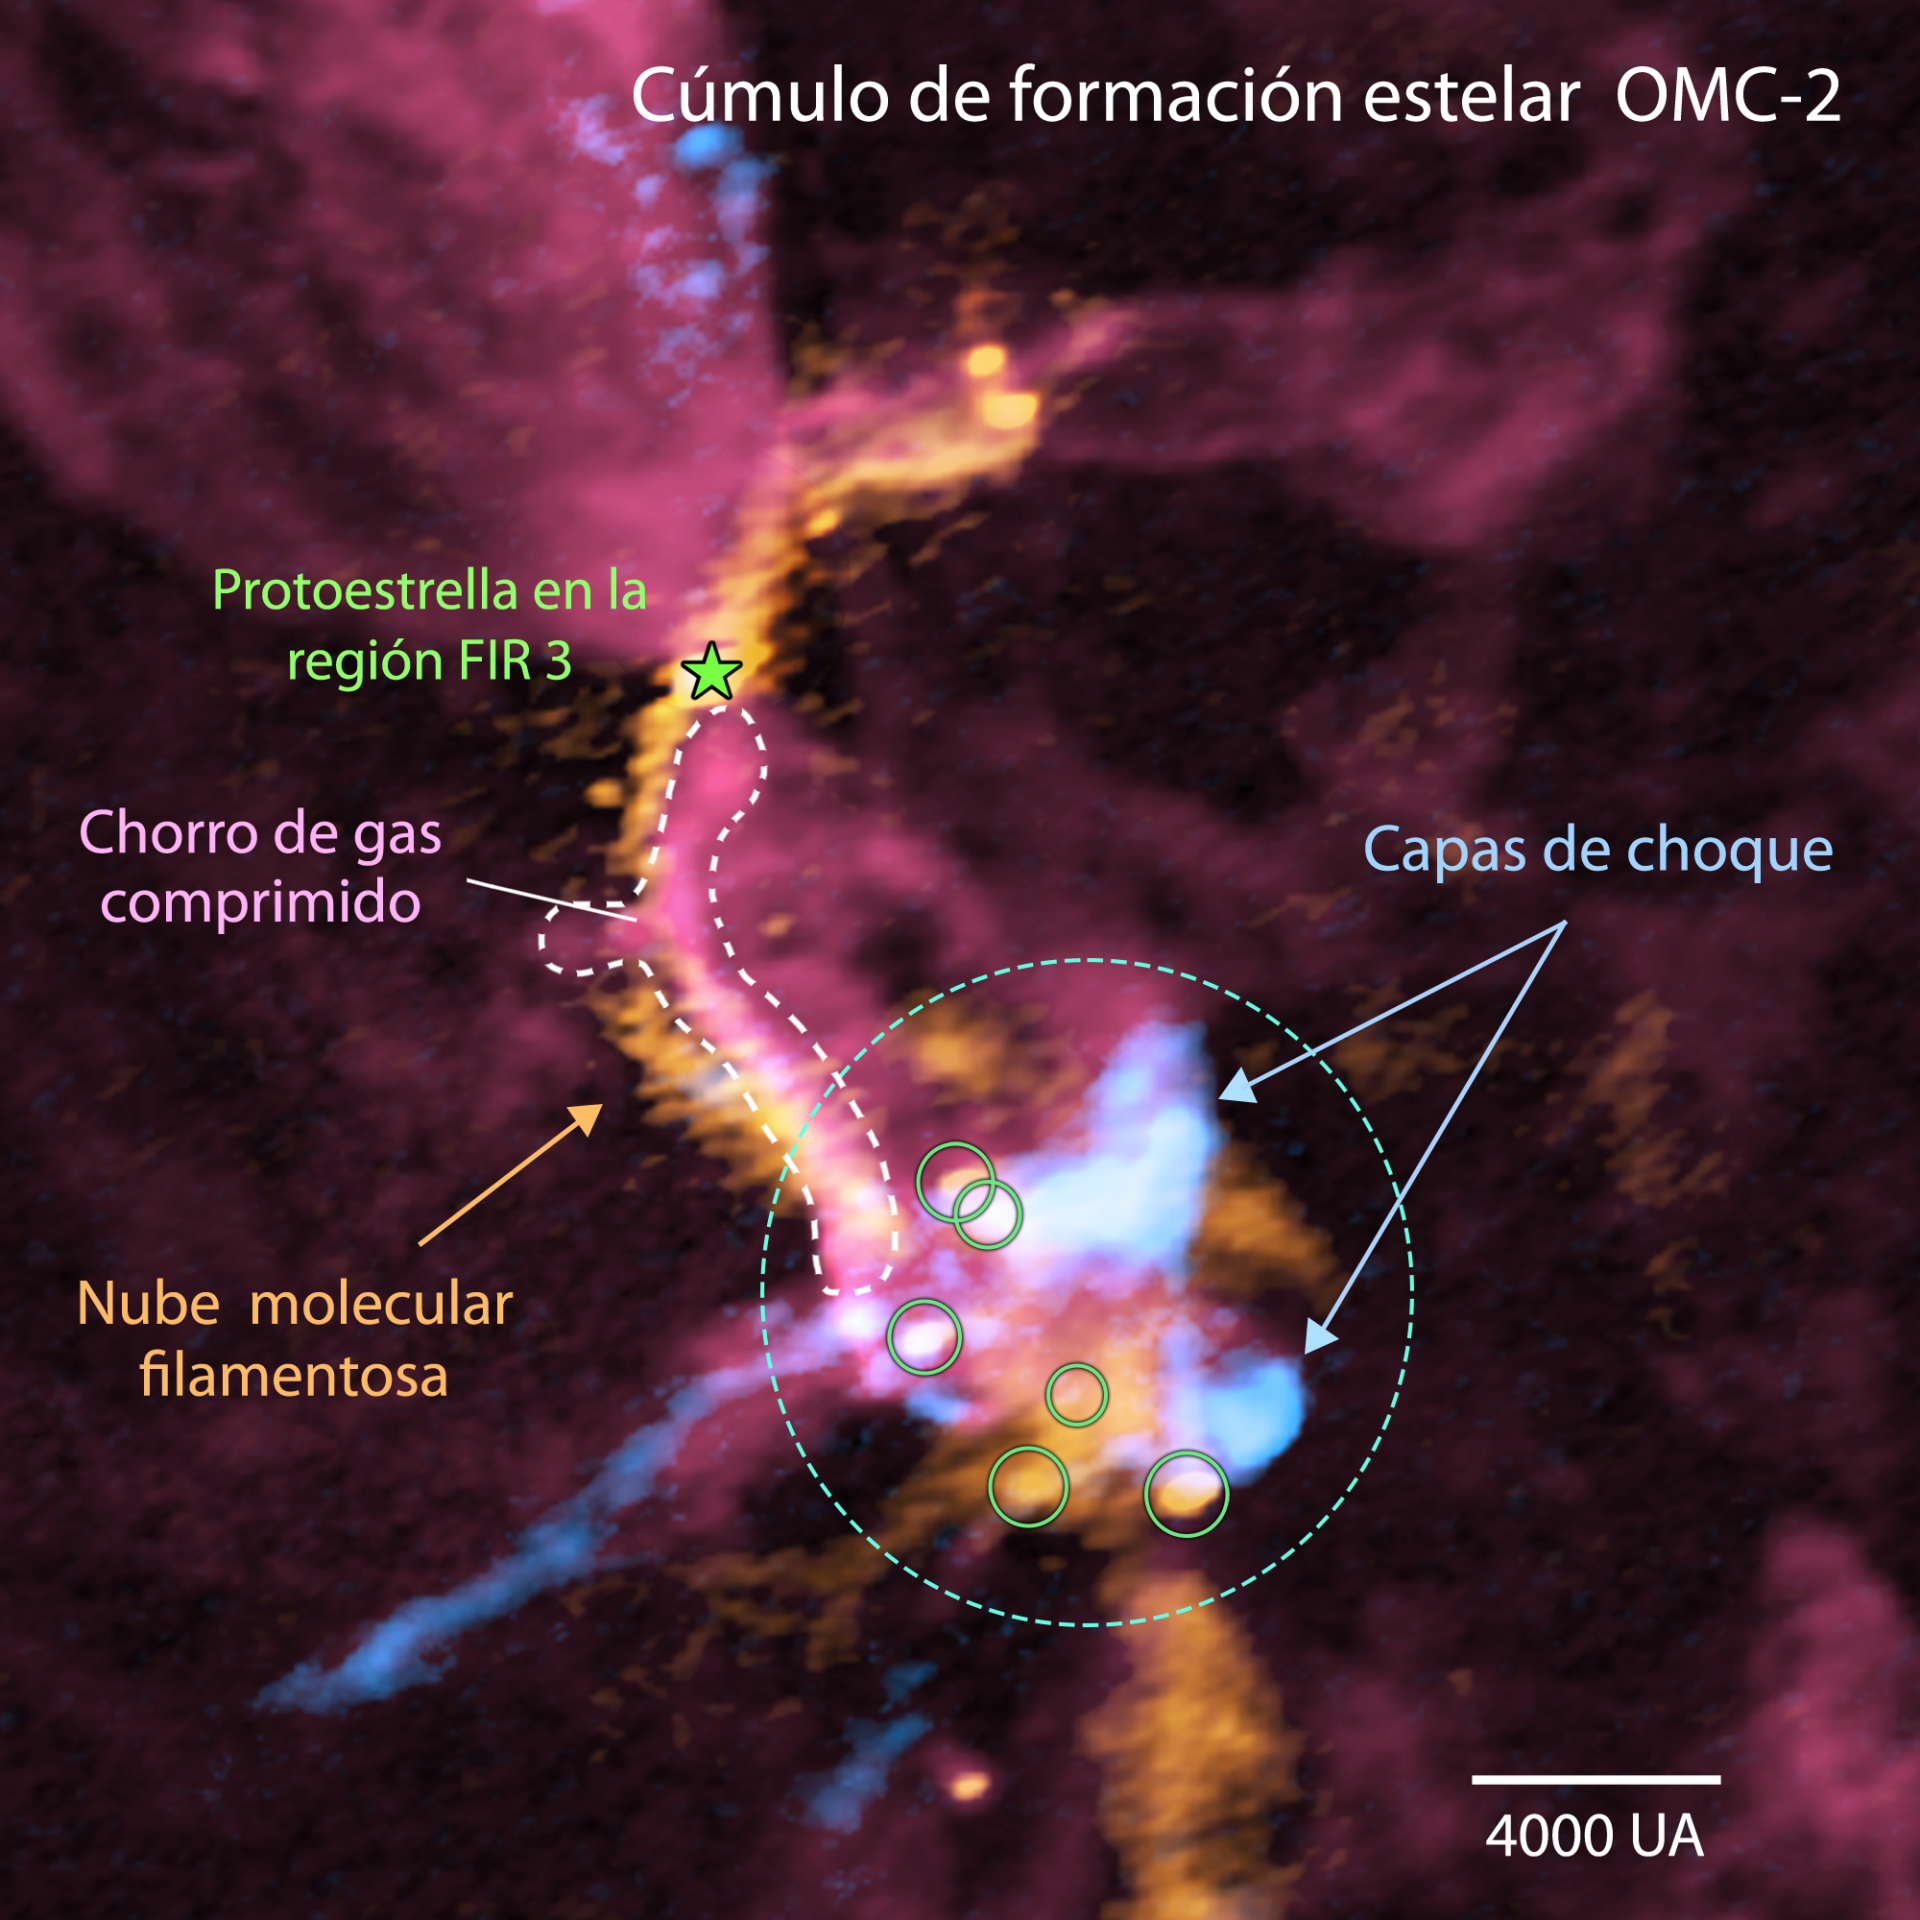 Imagen compuesta de la región de formación de cúmulos OMC-2 FIR3/4 obtenida con ALMA (en rojo se representa el gas de monóxido de carbono; en naranja, las emisiones del polvo; y en azul, el gas de monóxido de silicio). Las zonas donde los colores son más claros equivalen a señales de radio más intensas. La región FIR 3 se ubica en la zona superior izquierda de la imagen, mientras que FIR 4 corresponde a la parte inferior derecha. El chorro molecular gigante emanado de la protoestrella en la región FIR 3 (en rojo) entra en colisión con la nube molecular filamentosa (en naranja) y se comprime (en rosado). El chorro de gas también choca con gas denso hacia el final de su trayectoria (en naranja), donde se forman varias estrellas nuevas (señaladas por círculos verdes en la región FIR 4). El gas de monóxido de silicio revela las capas de choque (en azul claro). La barra blanca en la esquina inferior derecha muestra una escala de 4.000 unidades astronómicas (UA). Créditos: ALMA (ESO/NAOJ/NRAO), A. Sato et al.